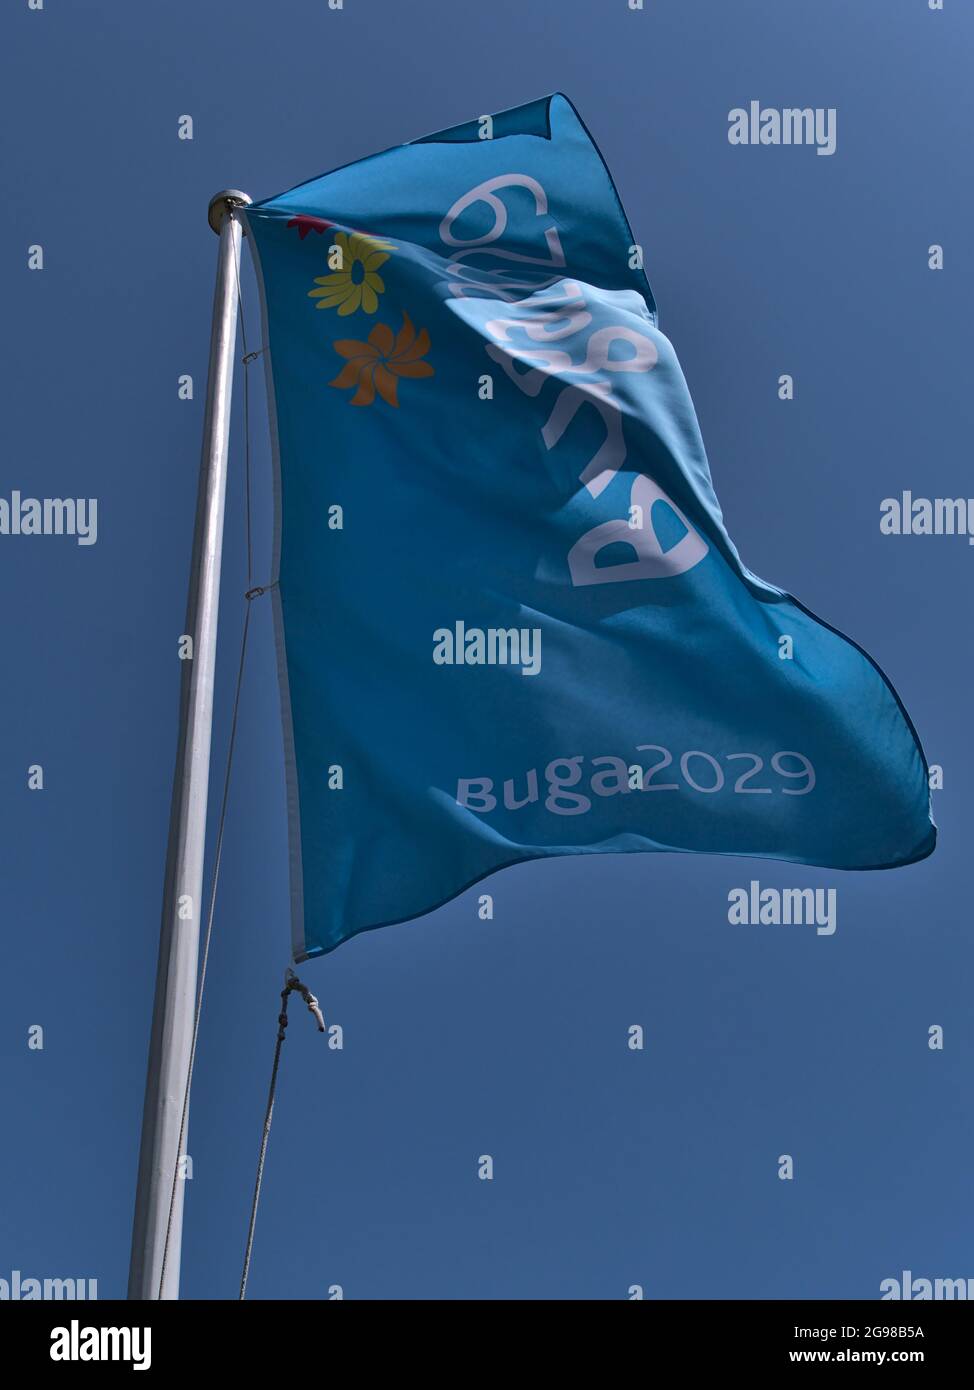 Vista de bajo ángulo de asta de bandera azul claro que anuncia para Bundesgartenschau (Buga) 2029, una feria bienal de horticultura. Foto de stock